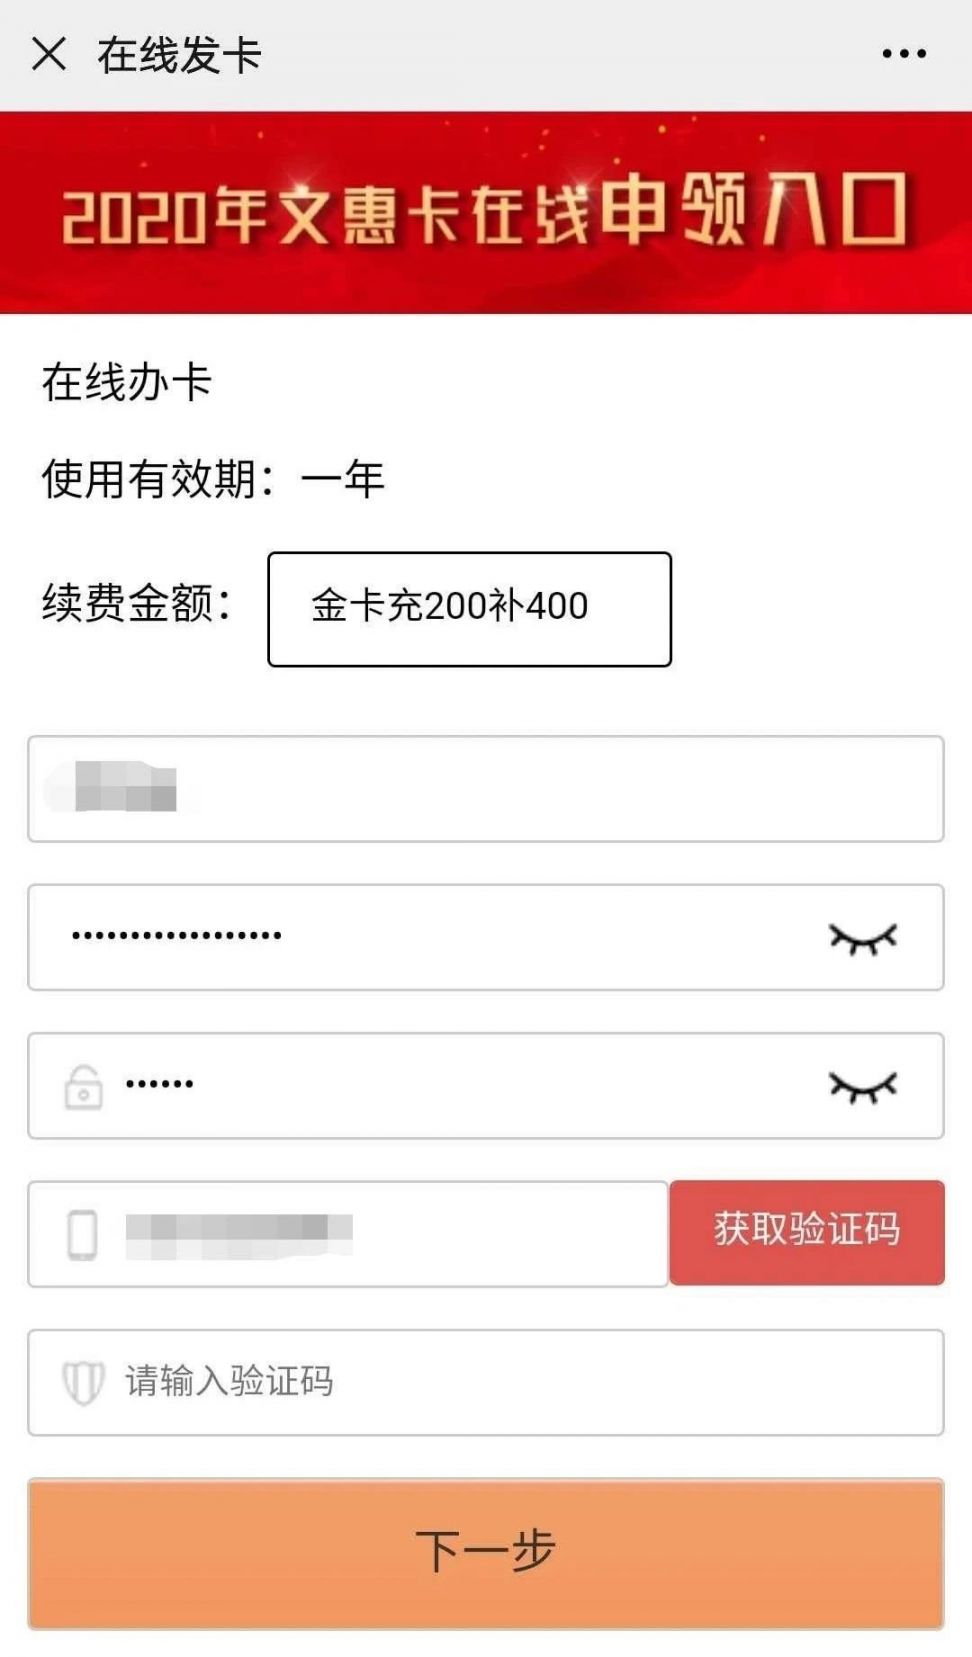 2020年天津文惠卡新用户微信办理指南